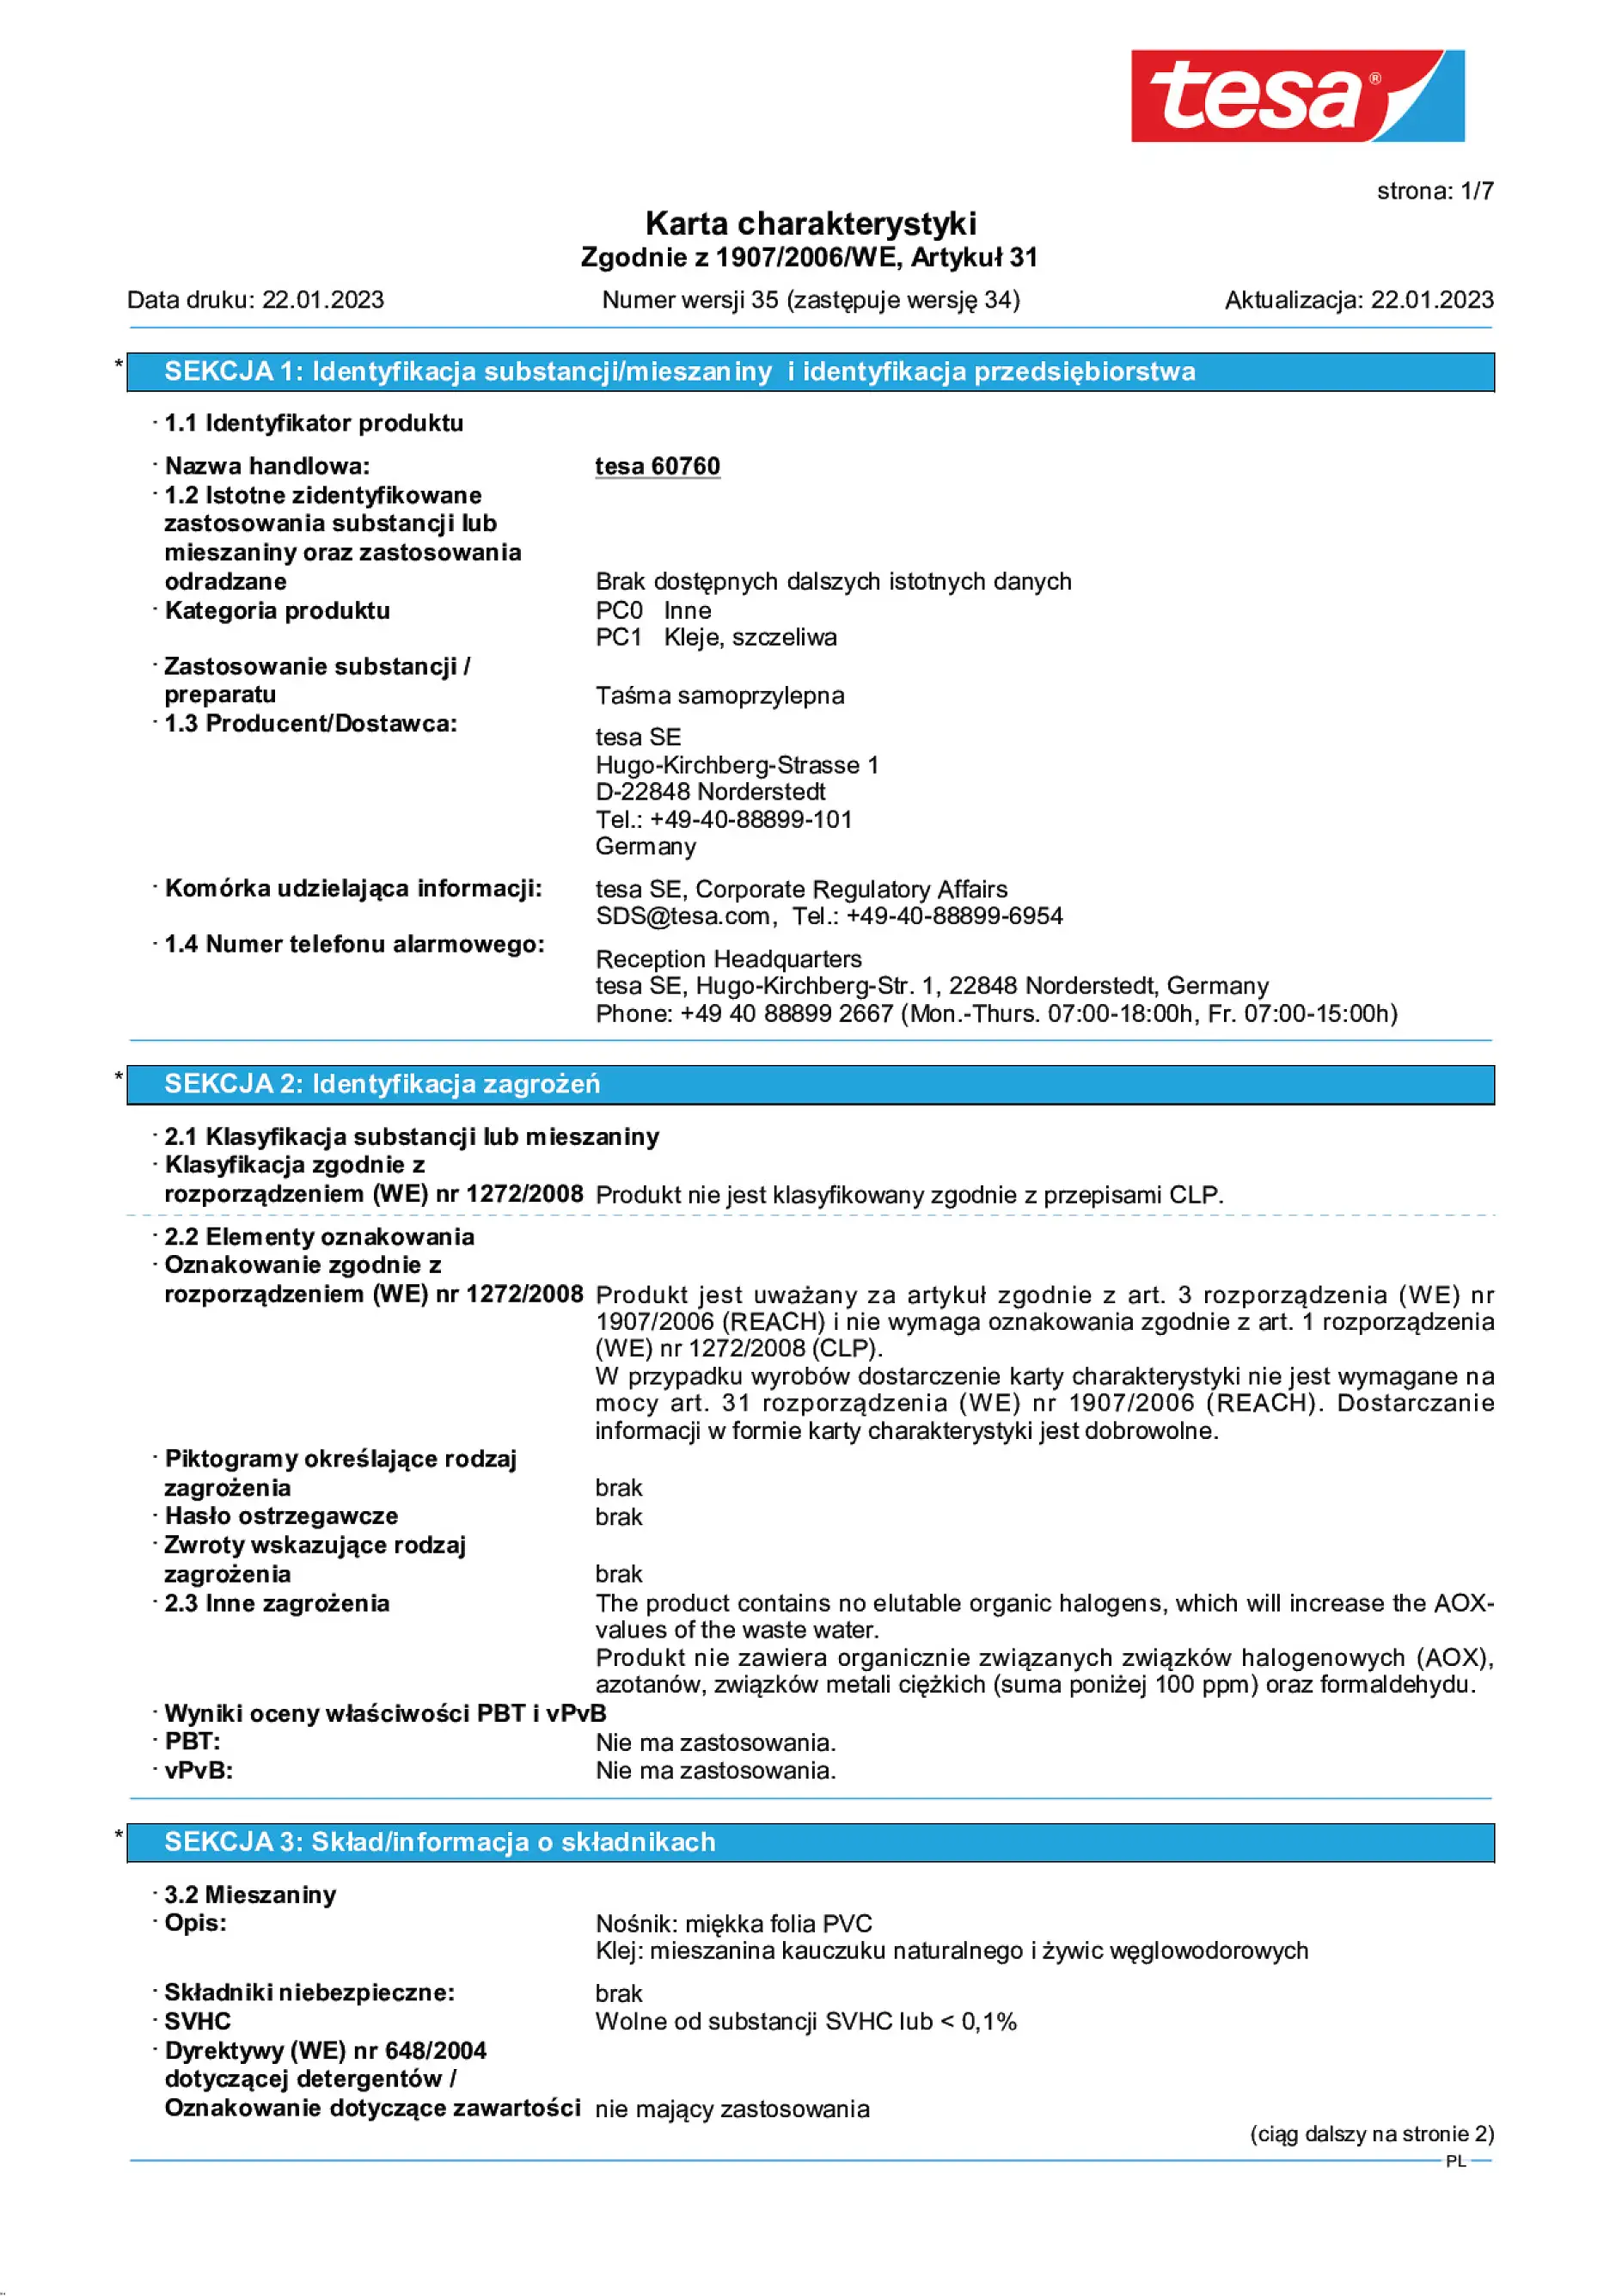 Safety data sheet_tesa® 60760_pl-PL_v35